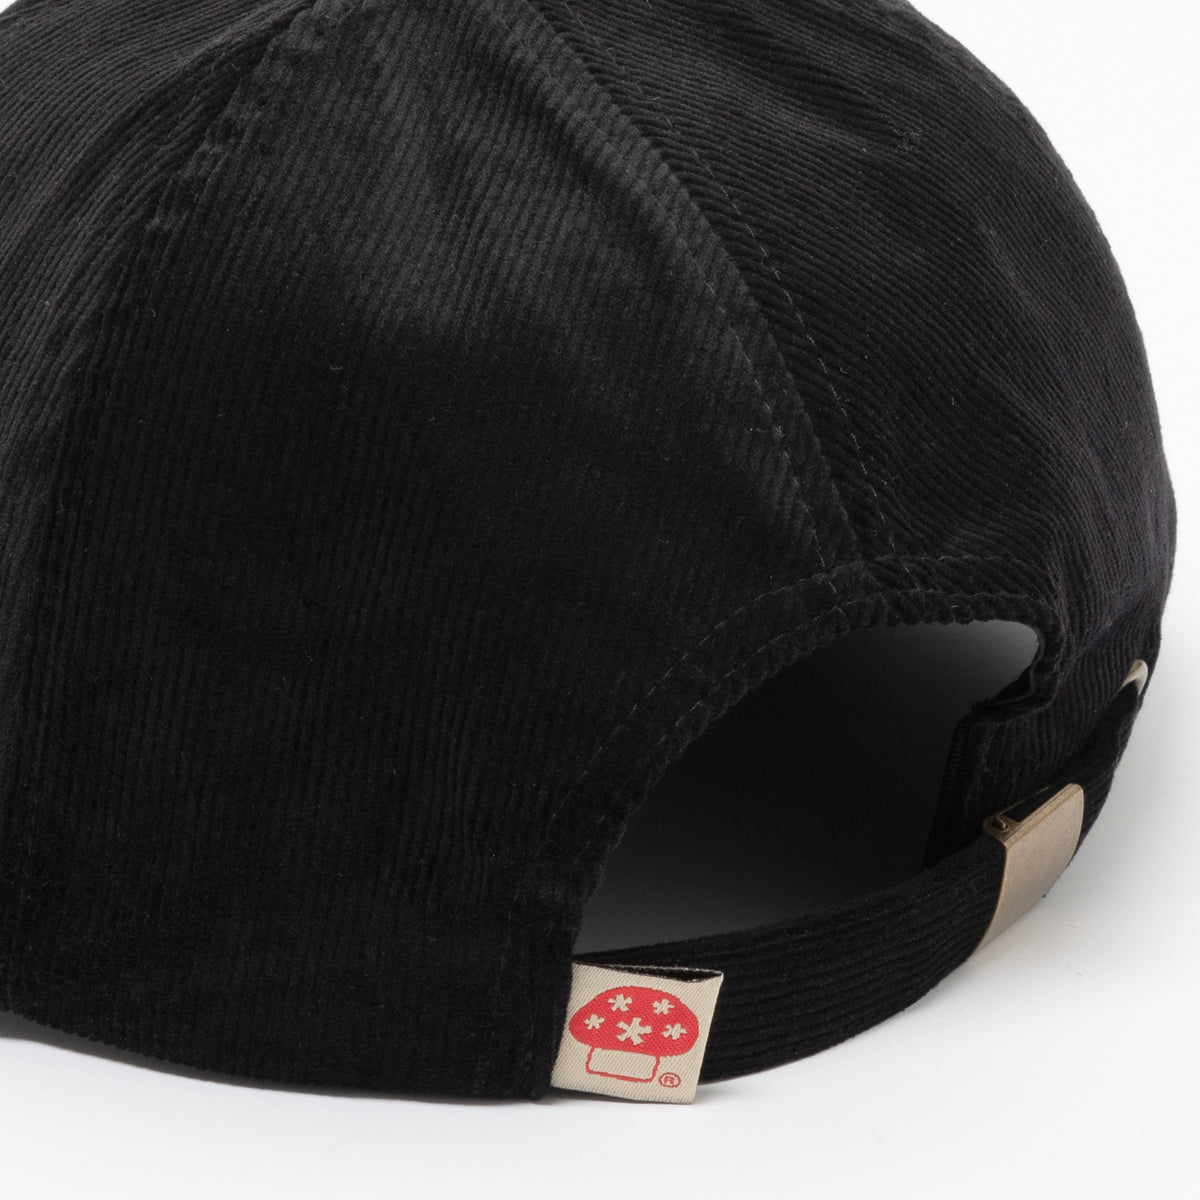 Hawkstar Hat (Black)